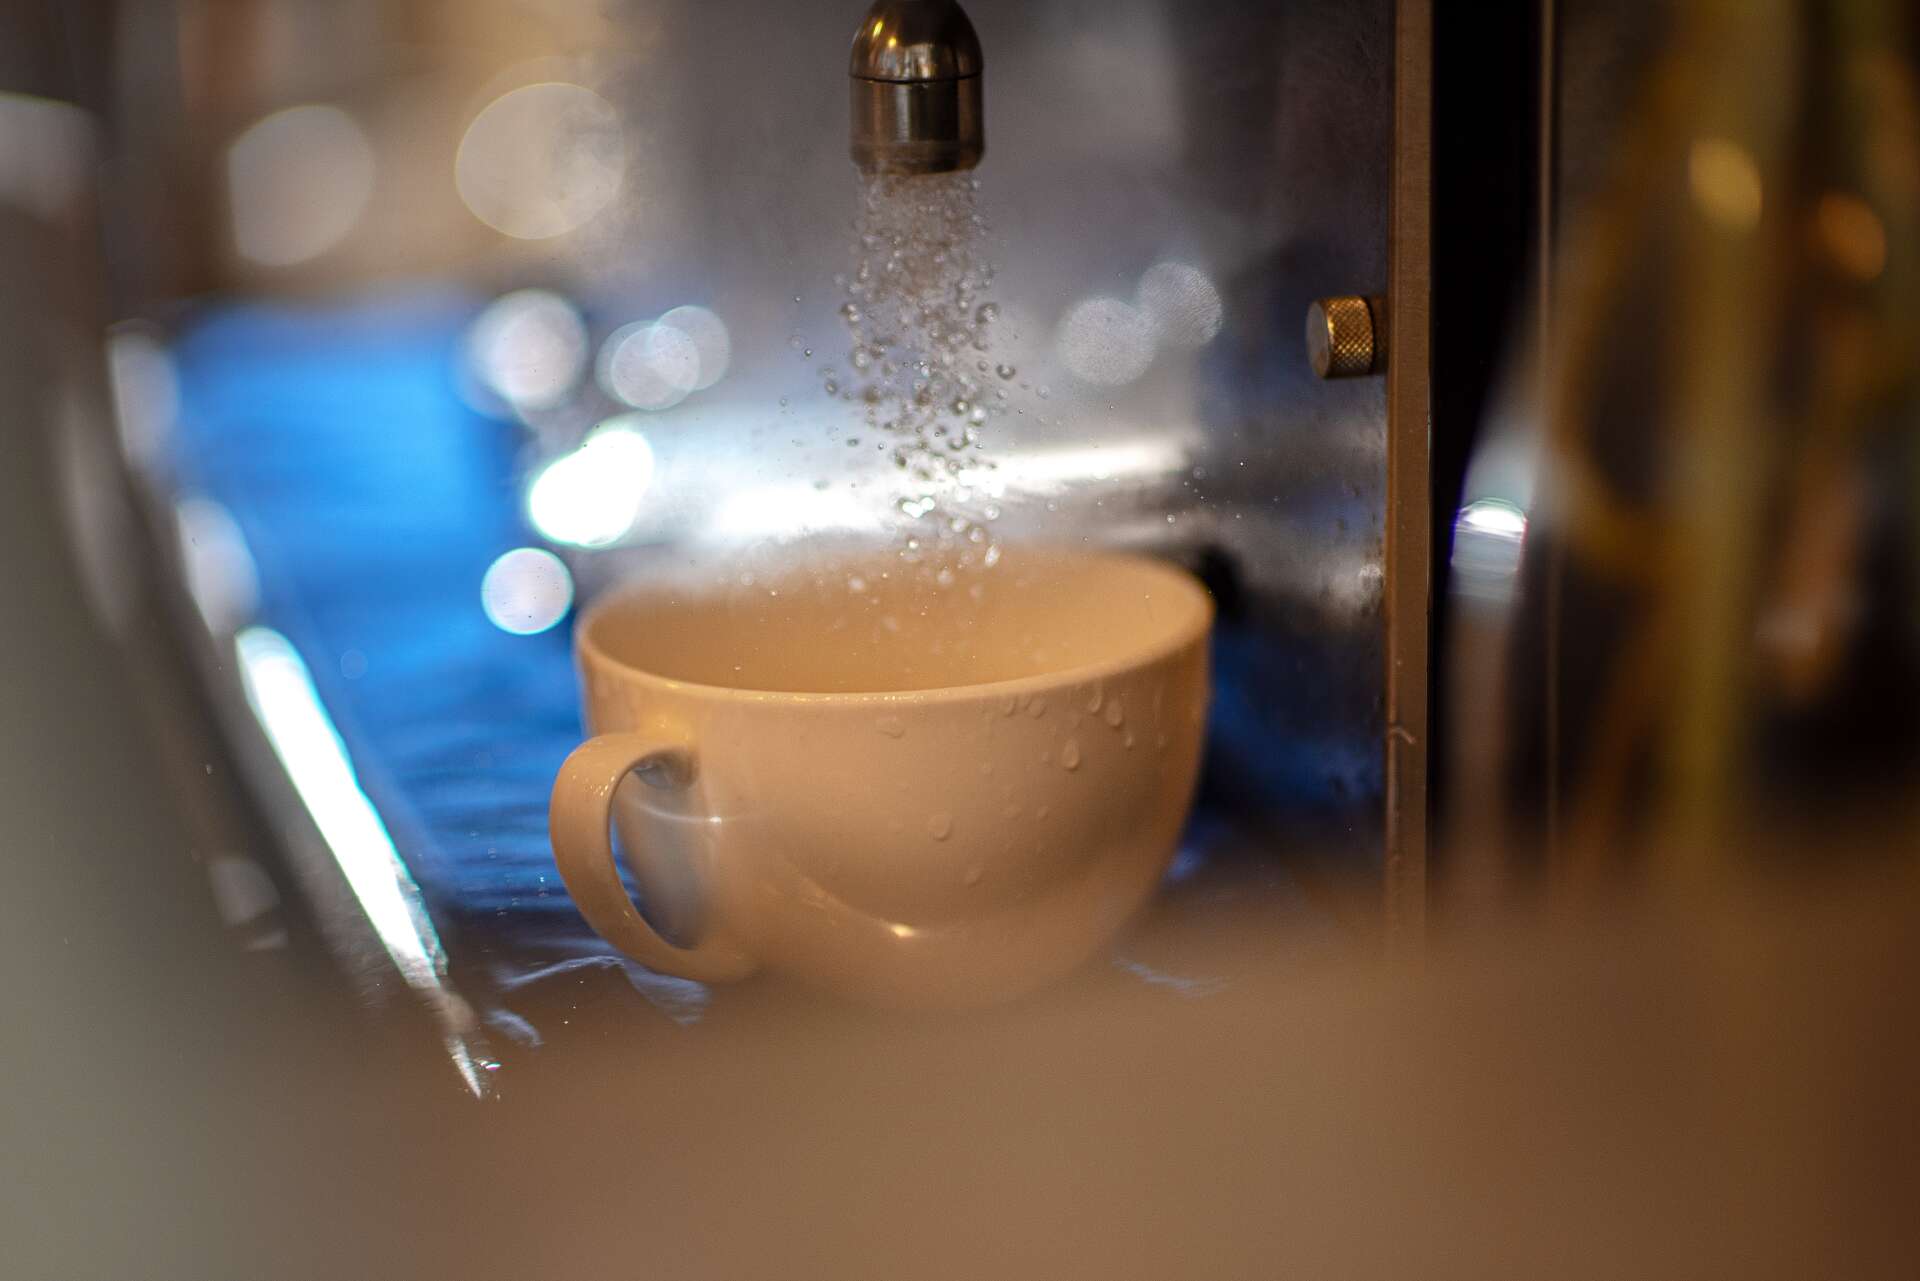 Kaffeemaschine reinigen: Die besten Hausmittel gegen Kalk